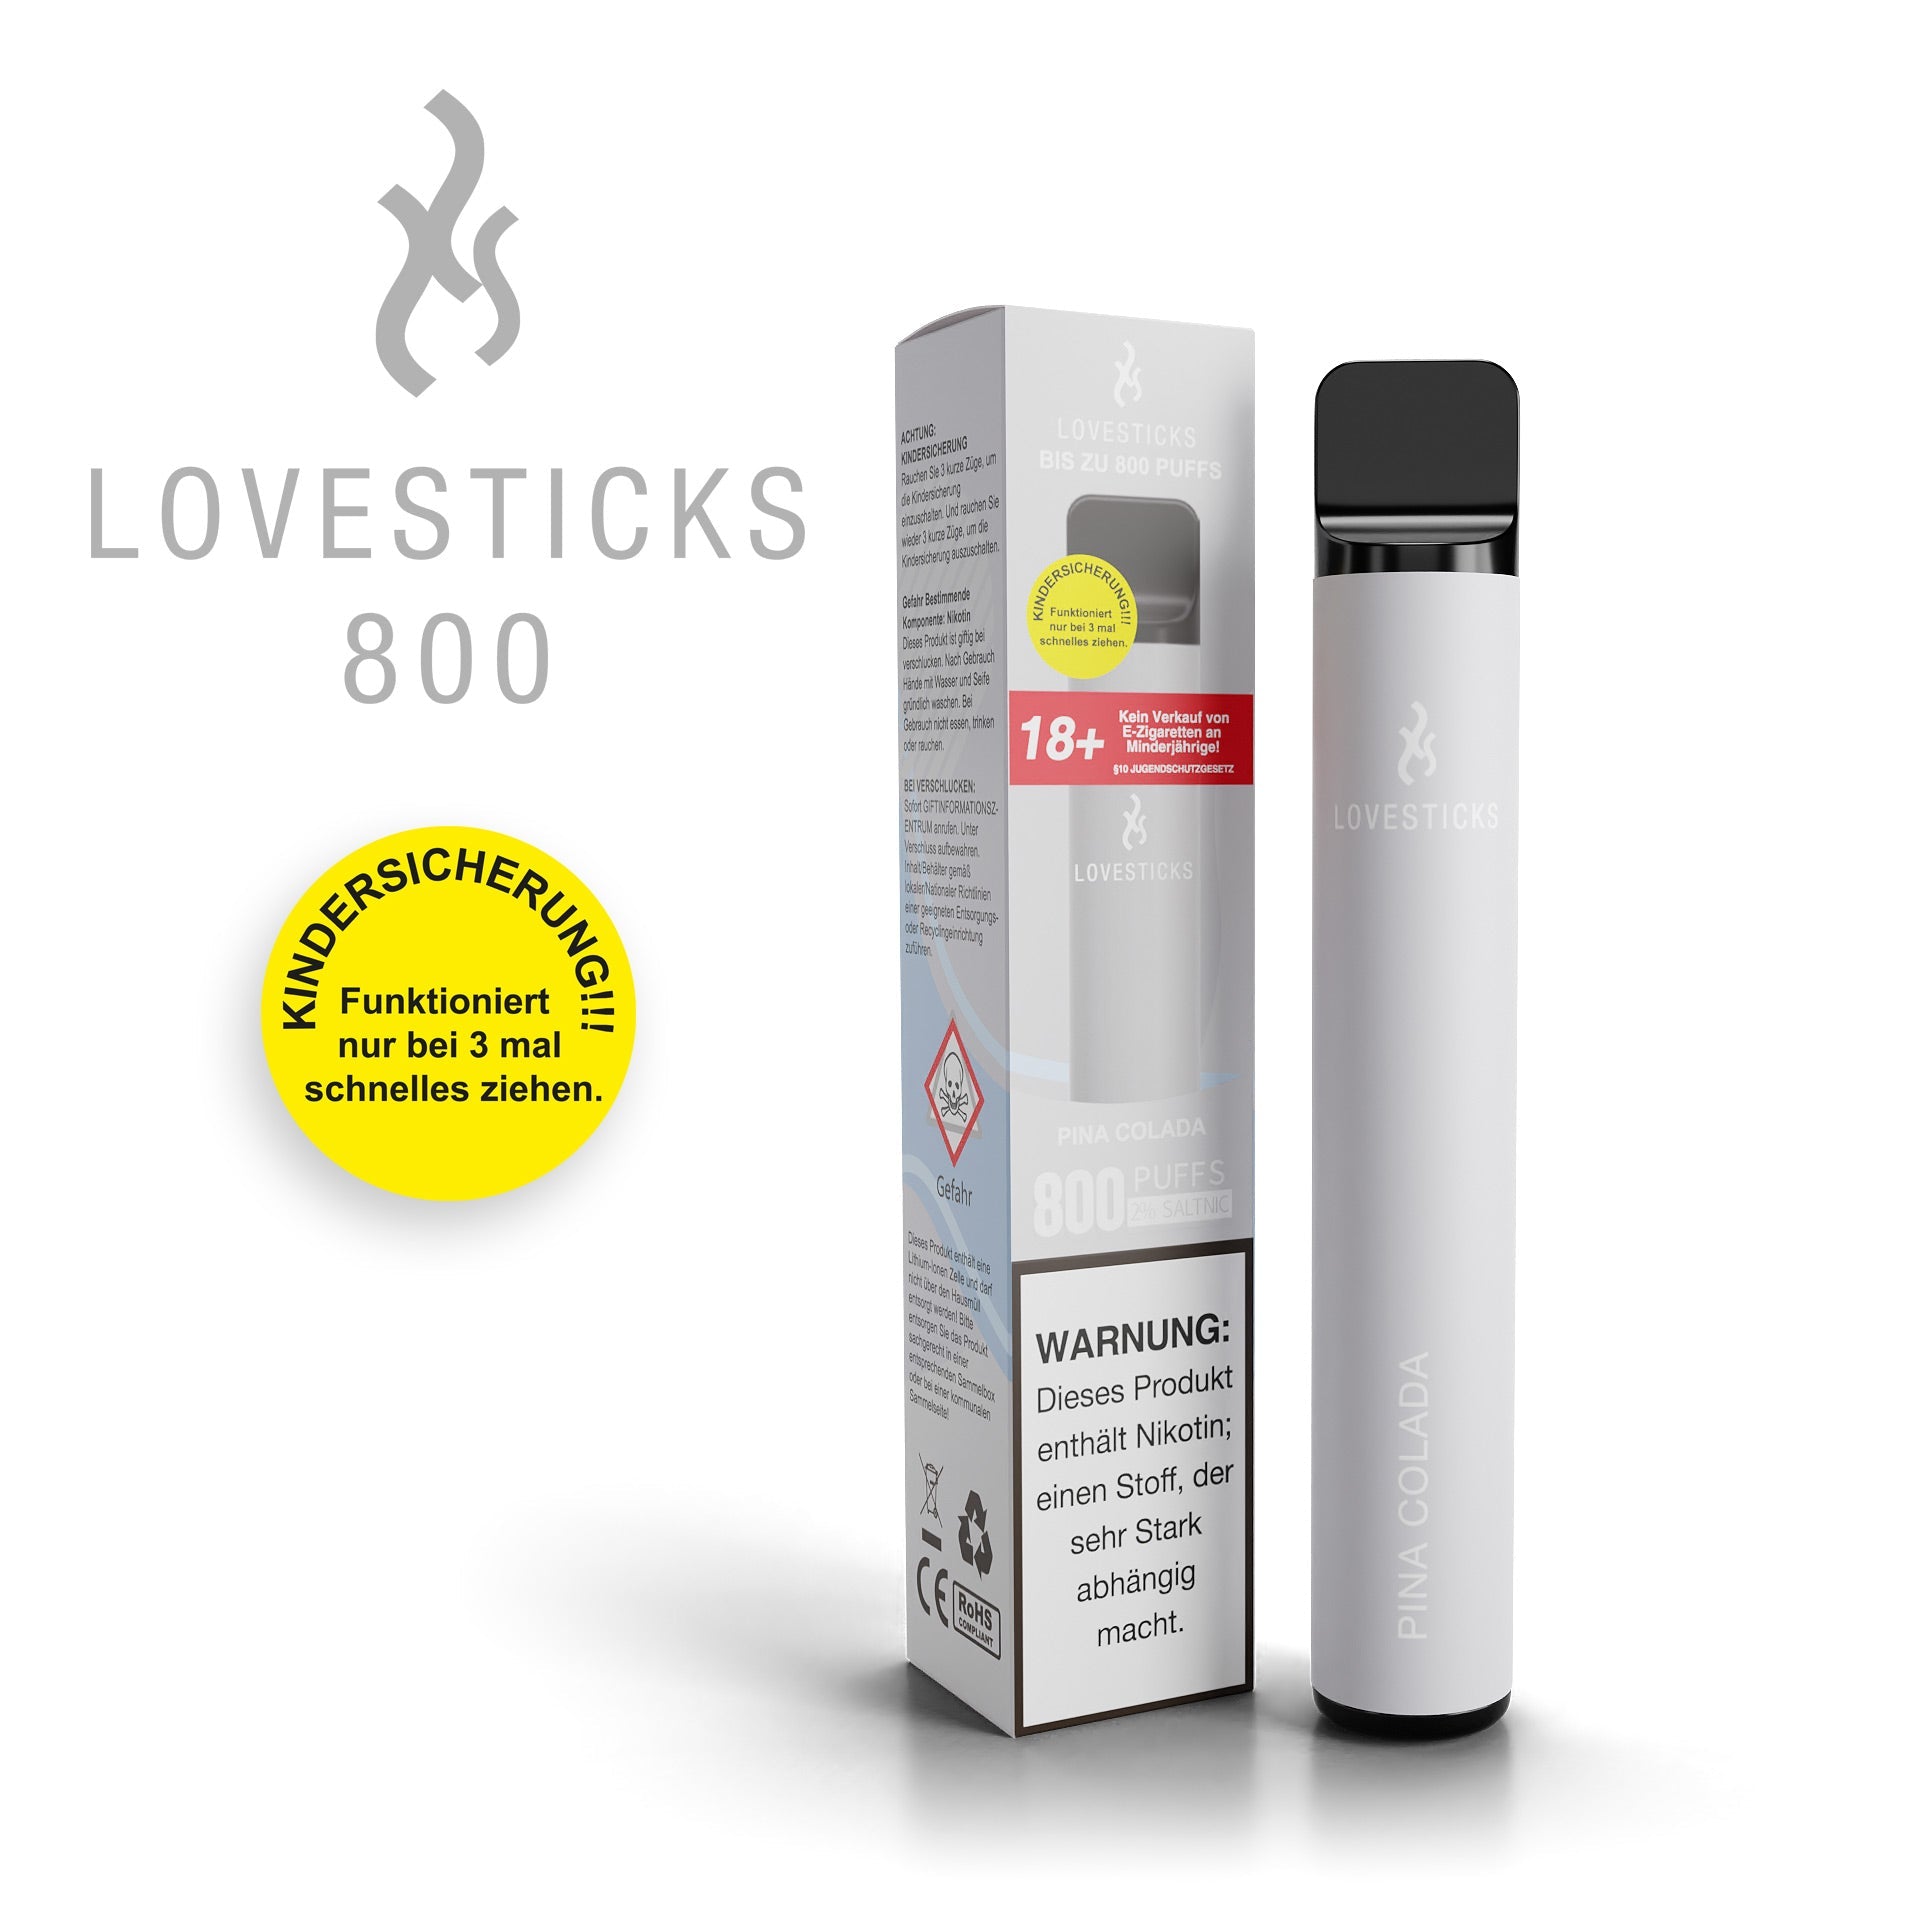 LOVESTICKS 800 – PINA COLADA E-Zigarette (8125160423719) (8027931115751)